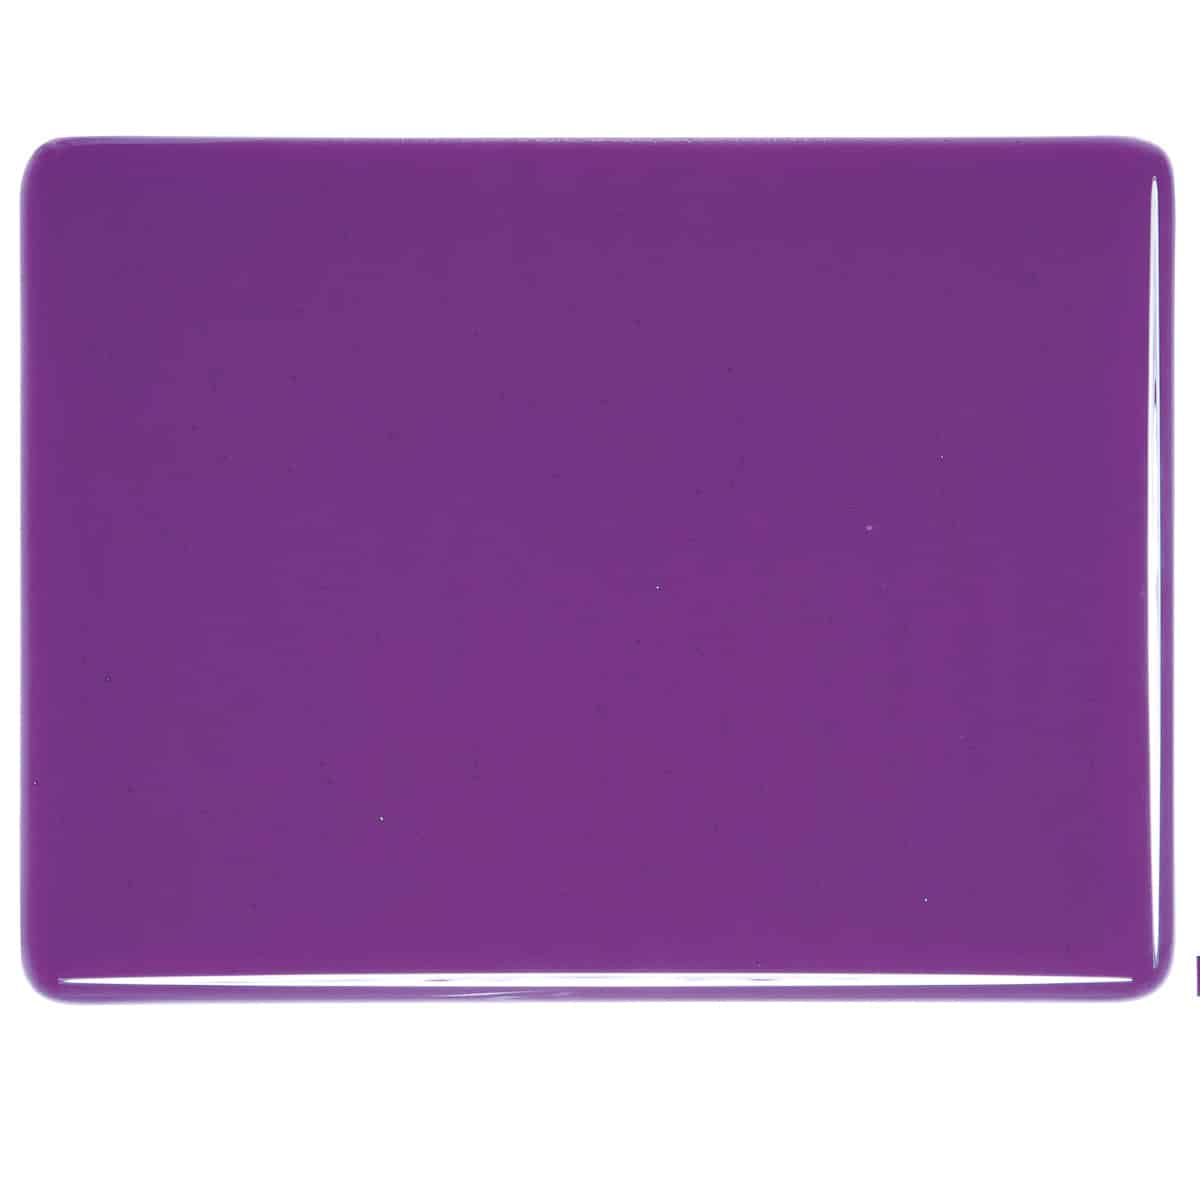 001234 Transparent Violet sheet glass tile